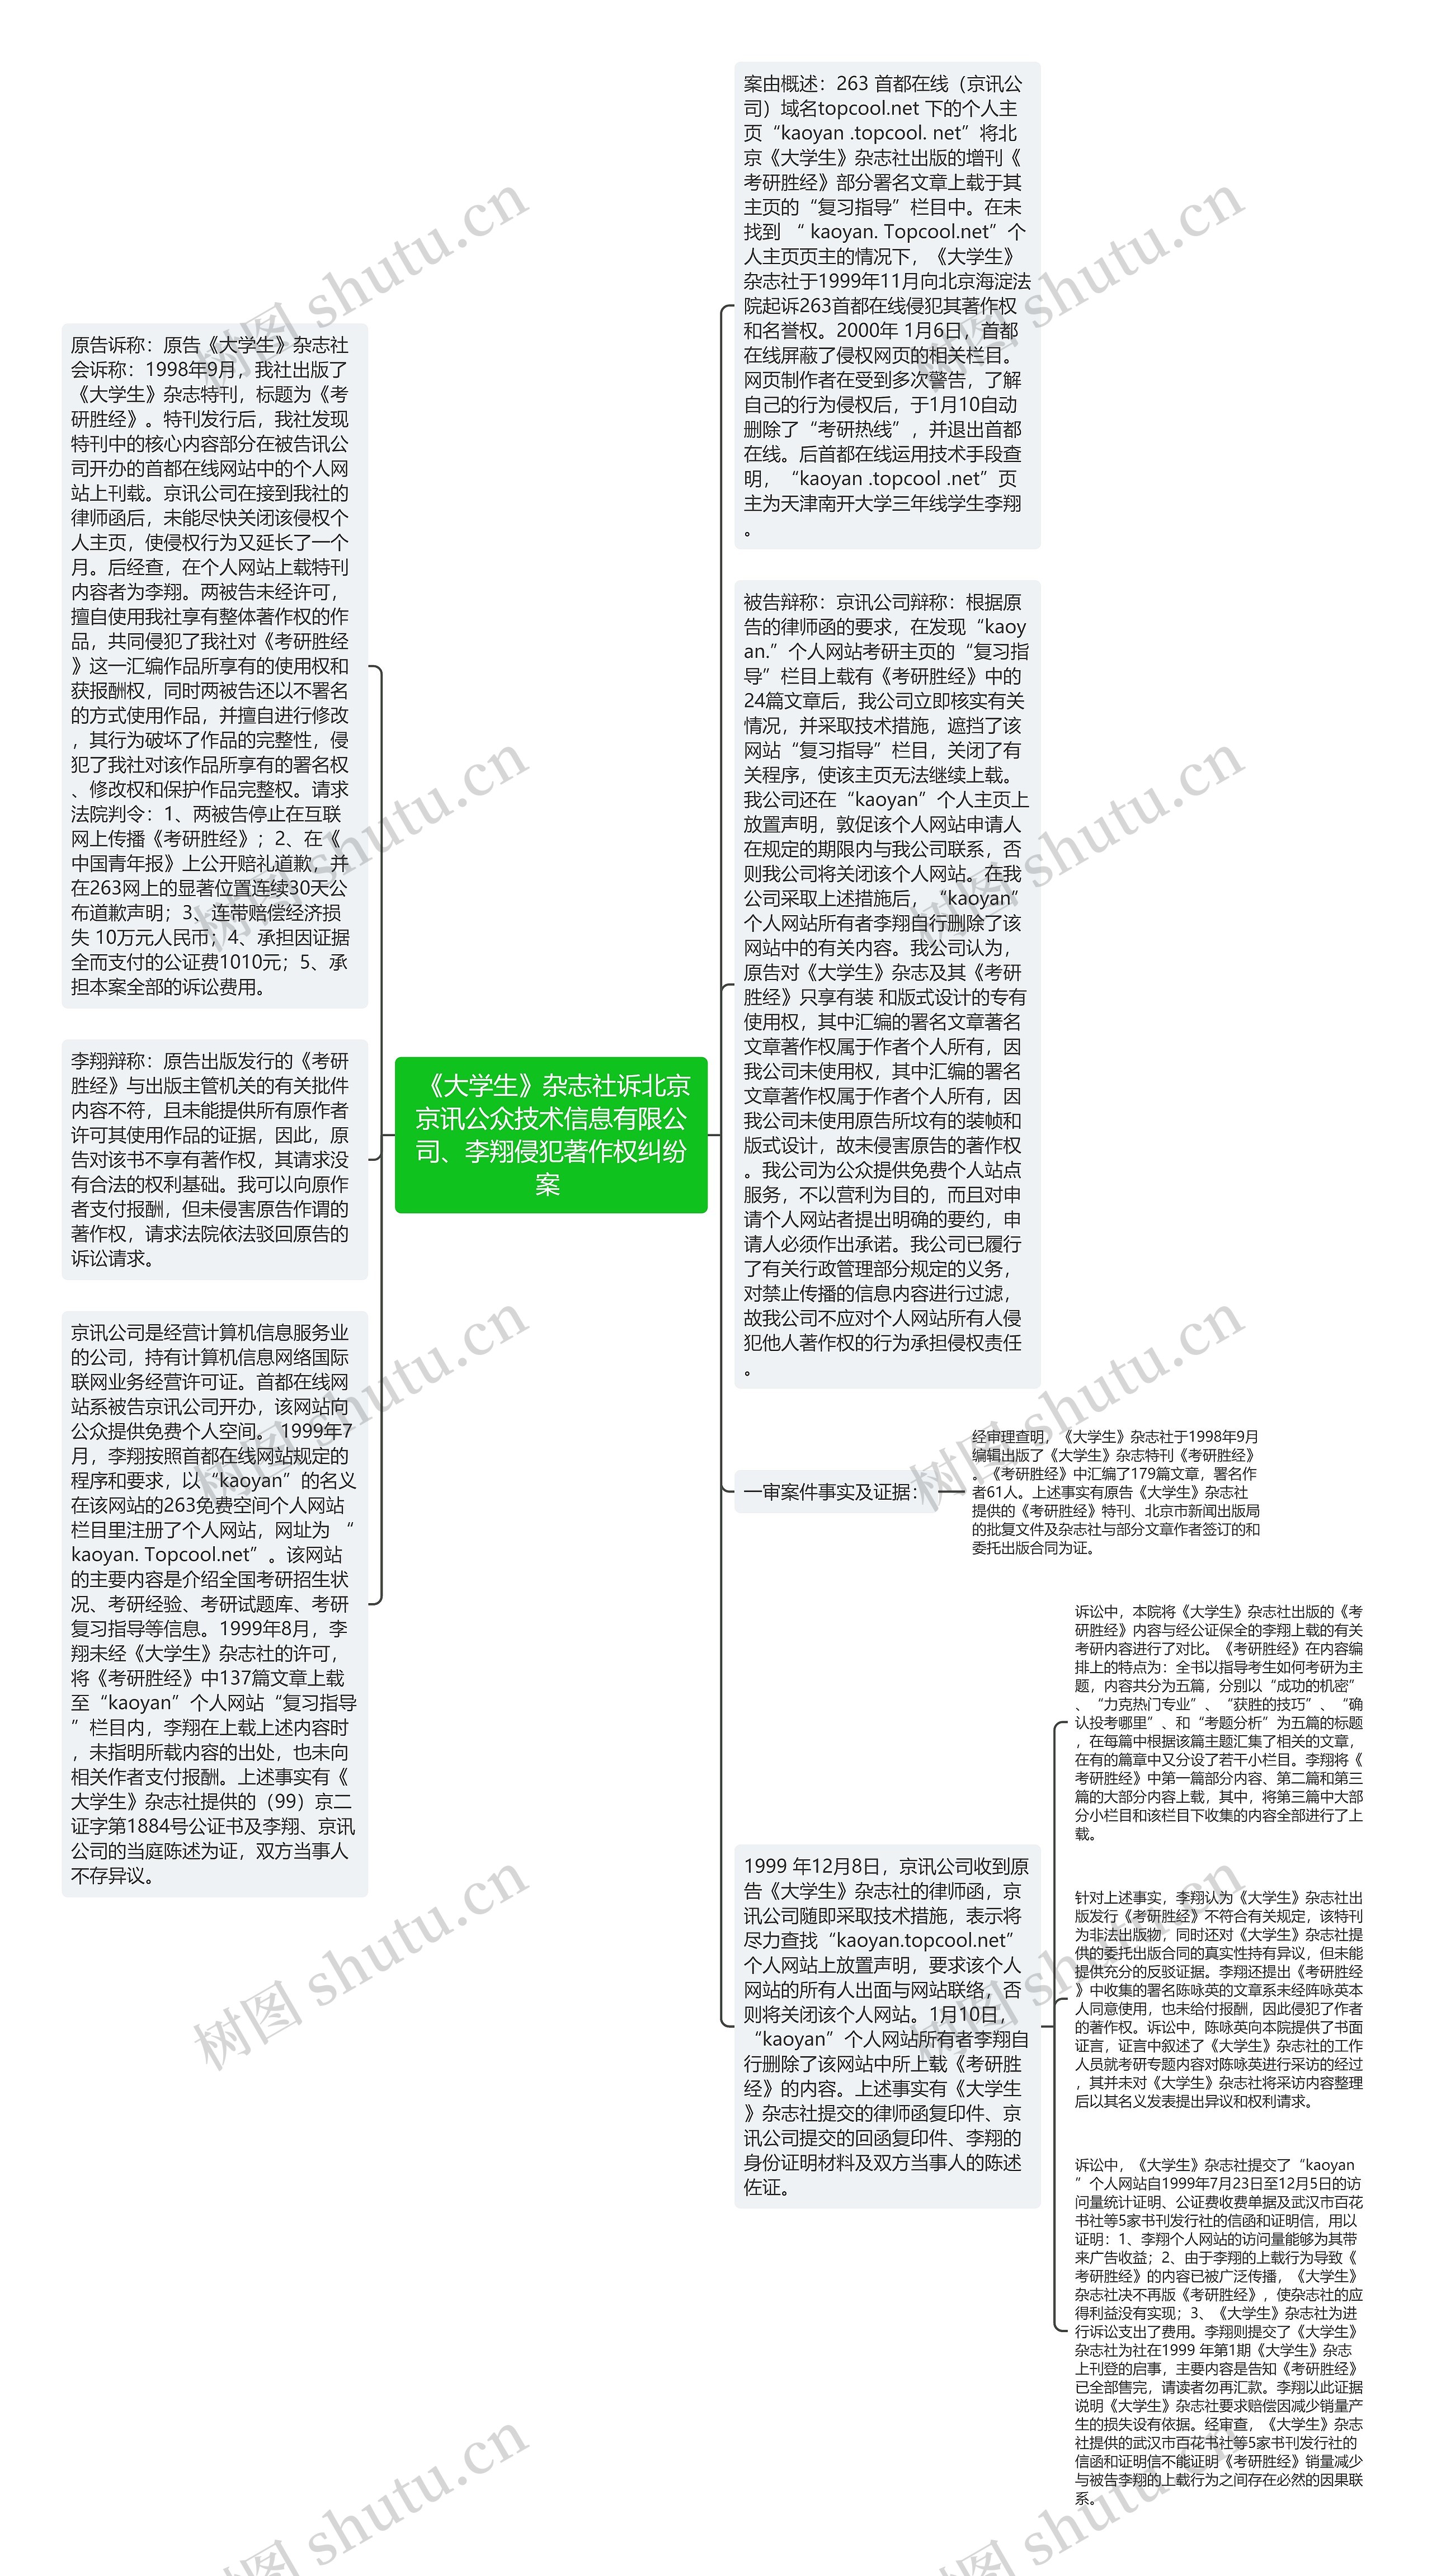  《大学生》杂志社诉北京京讯公众技术信息有限公司、李翔侵犯著作权纠纷案 